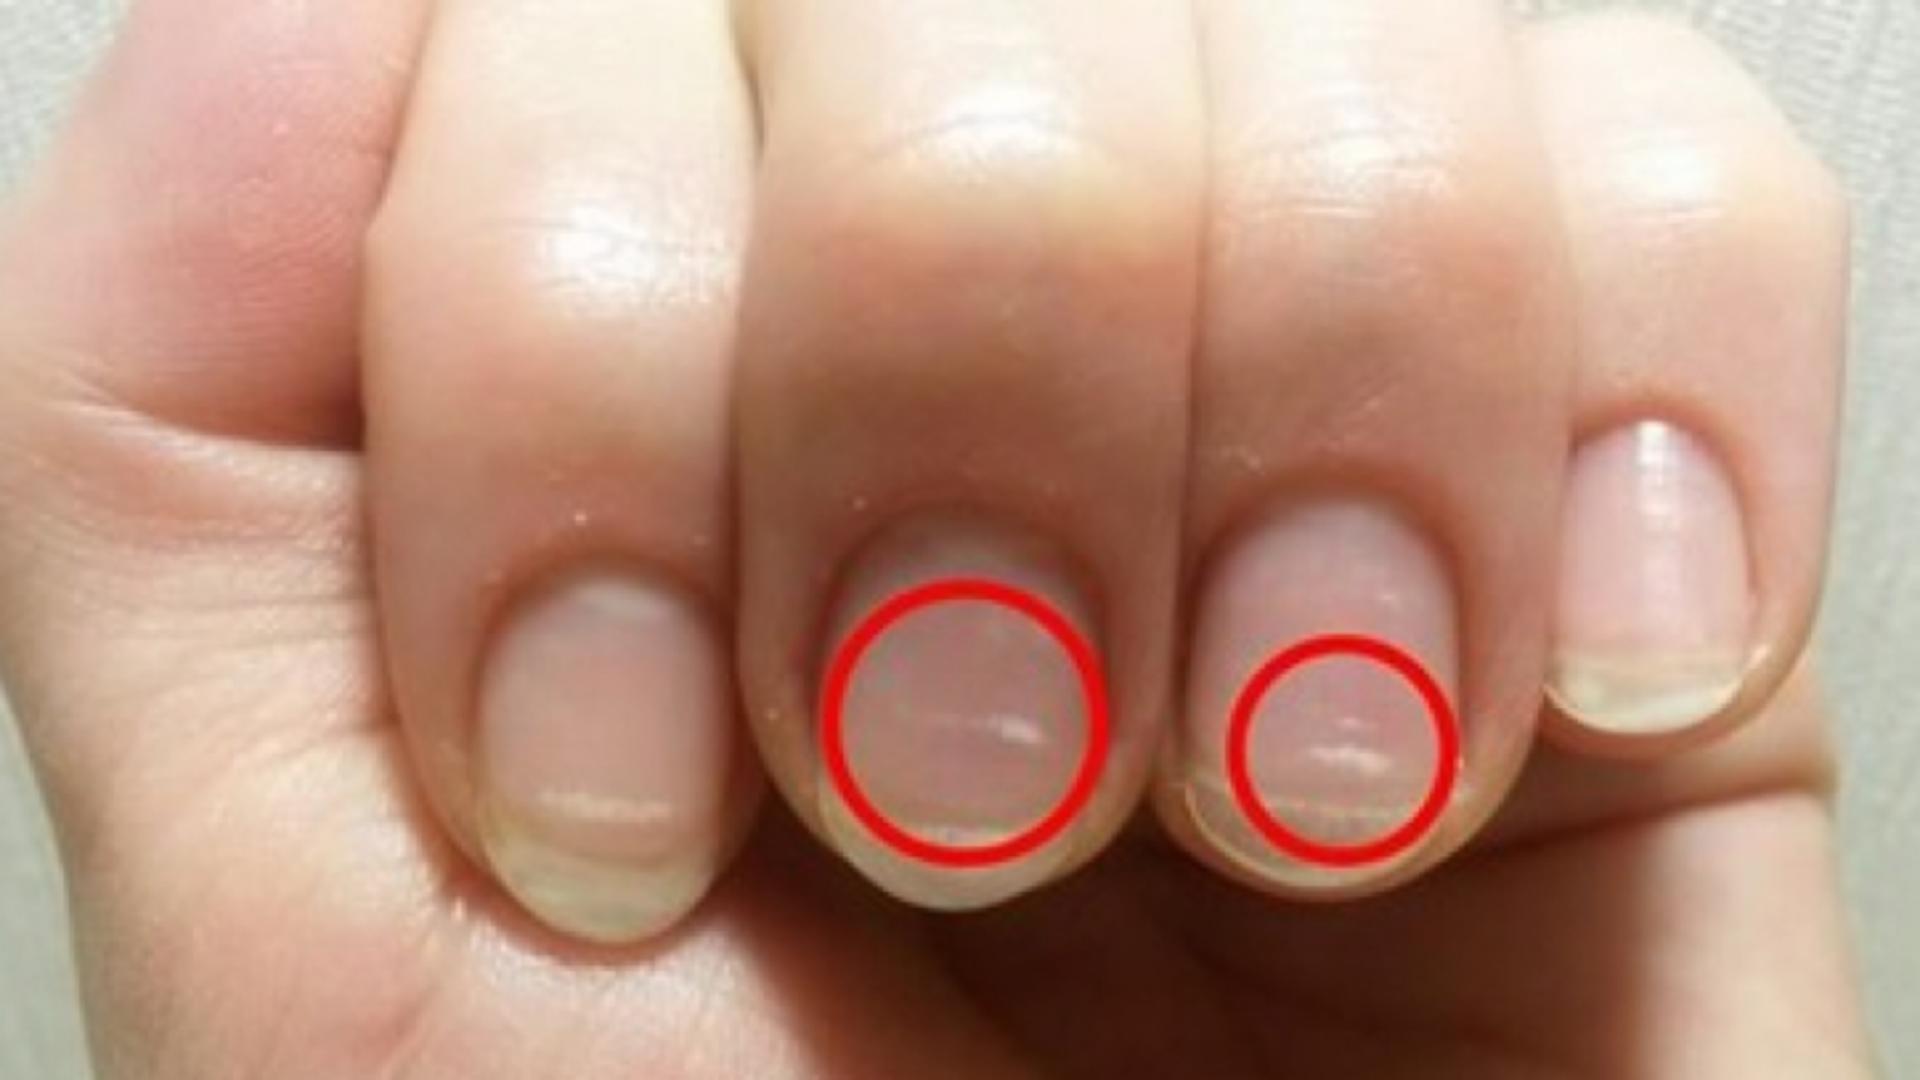 Semnul de pe unghii care îți arată că trebuie să mergi de urgență la medic